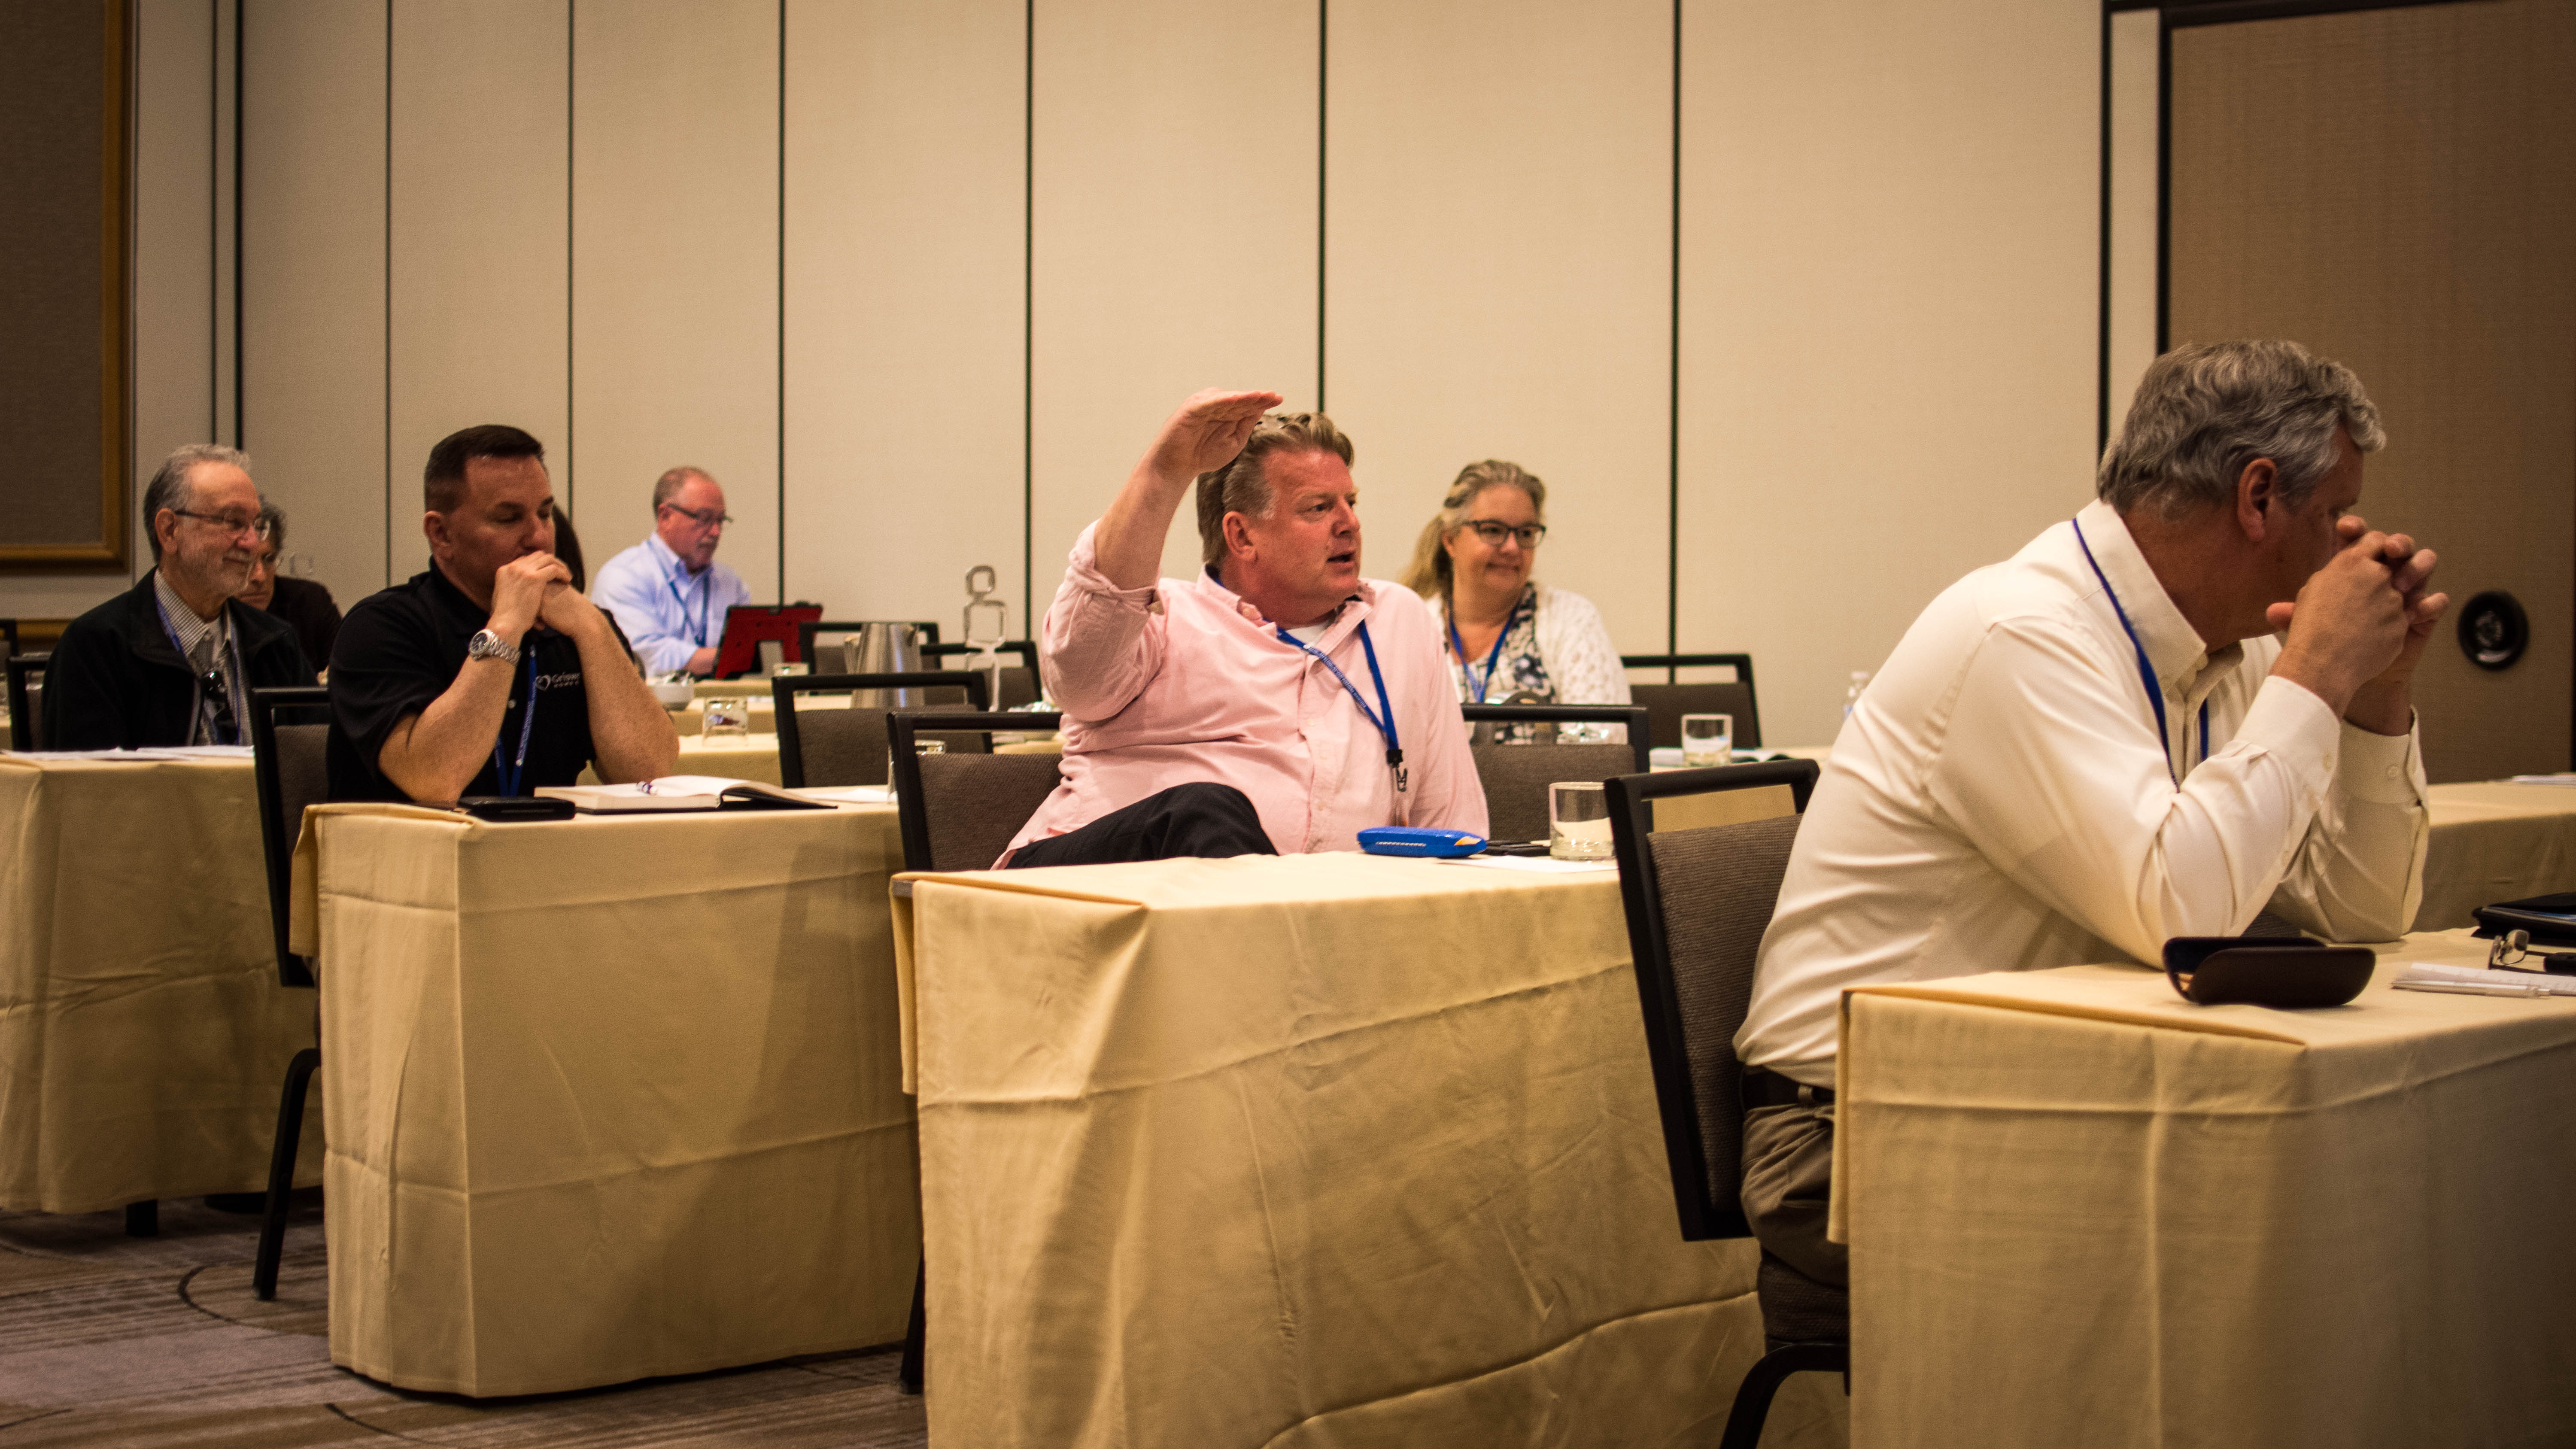 تظهر الصورة بريان شنيل وهو يرفع يده بشدة أثناء التحدث إلى محامين آخرين من أصحاب الامتياز خلال اجتماع.